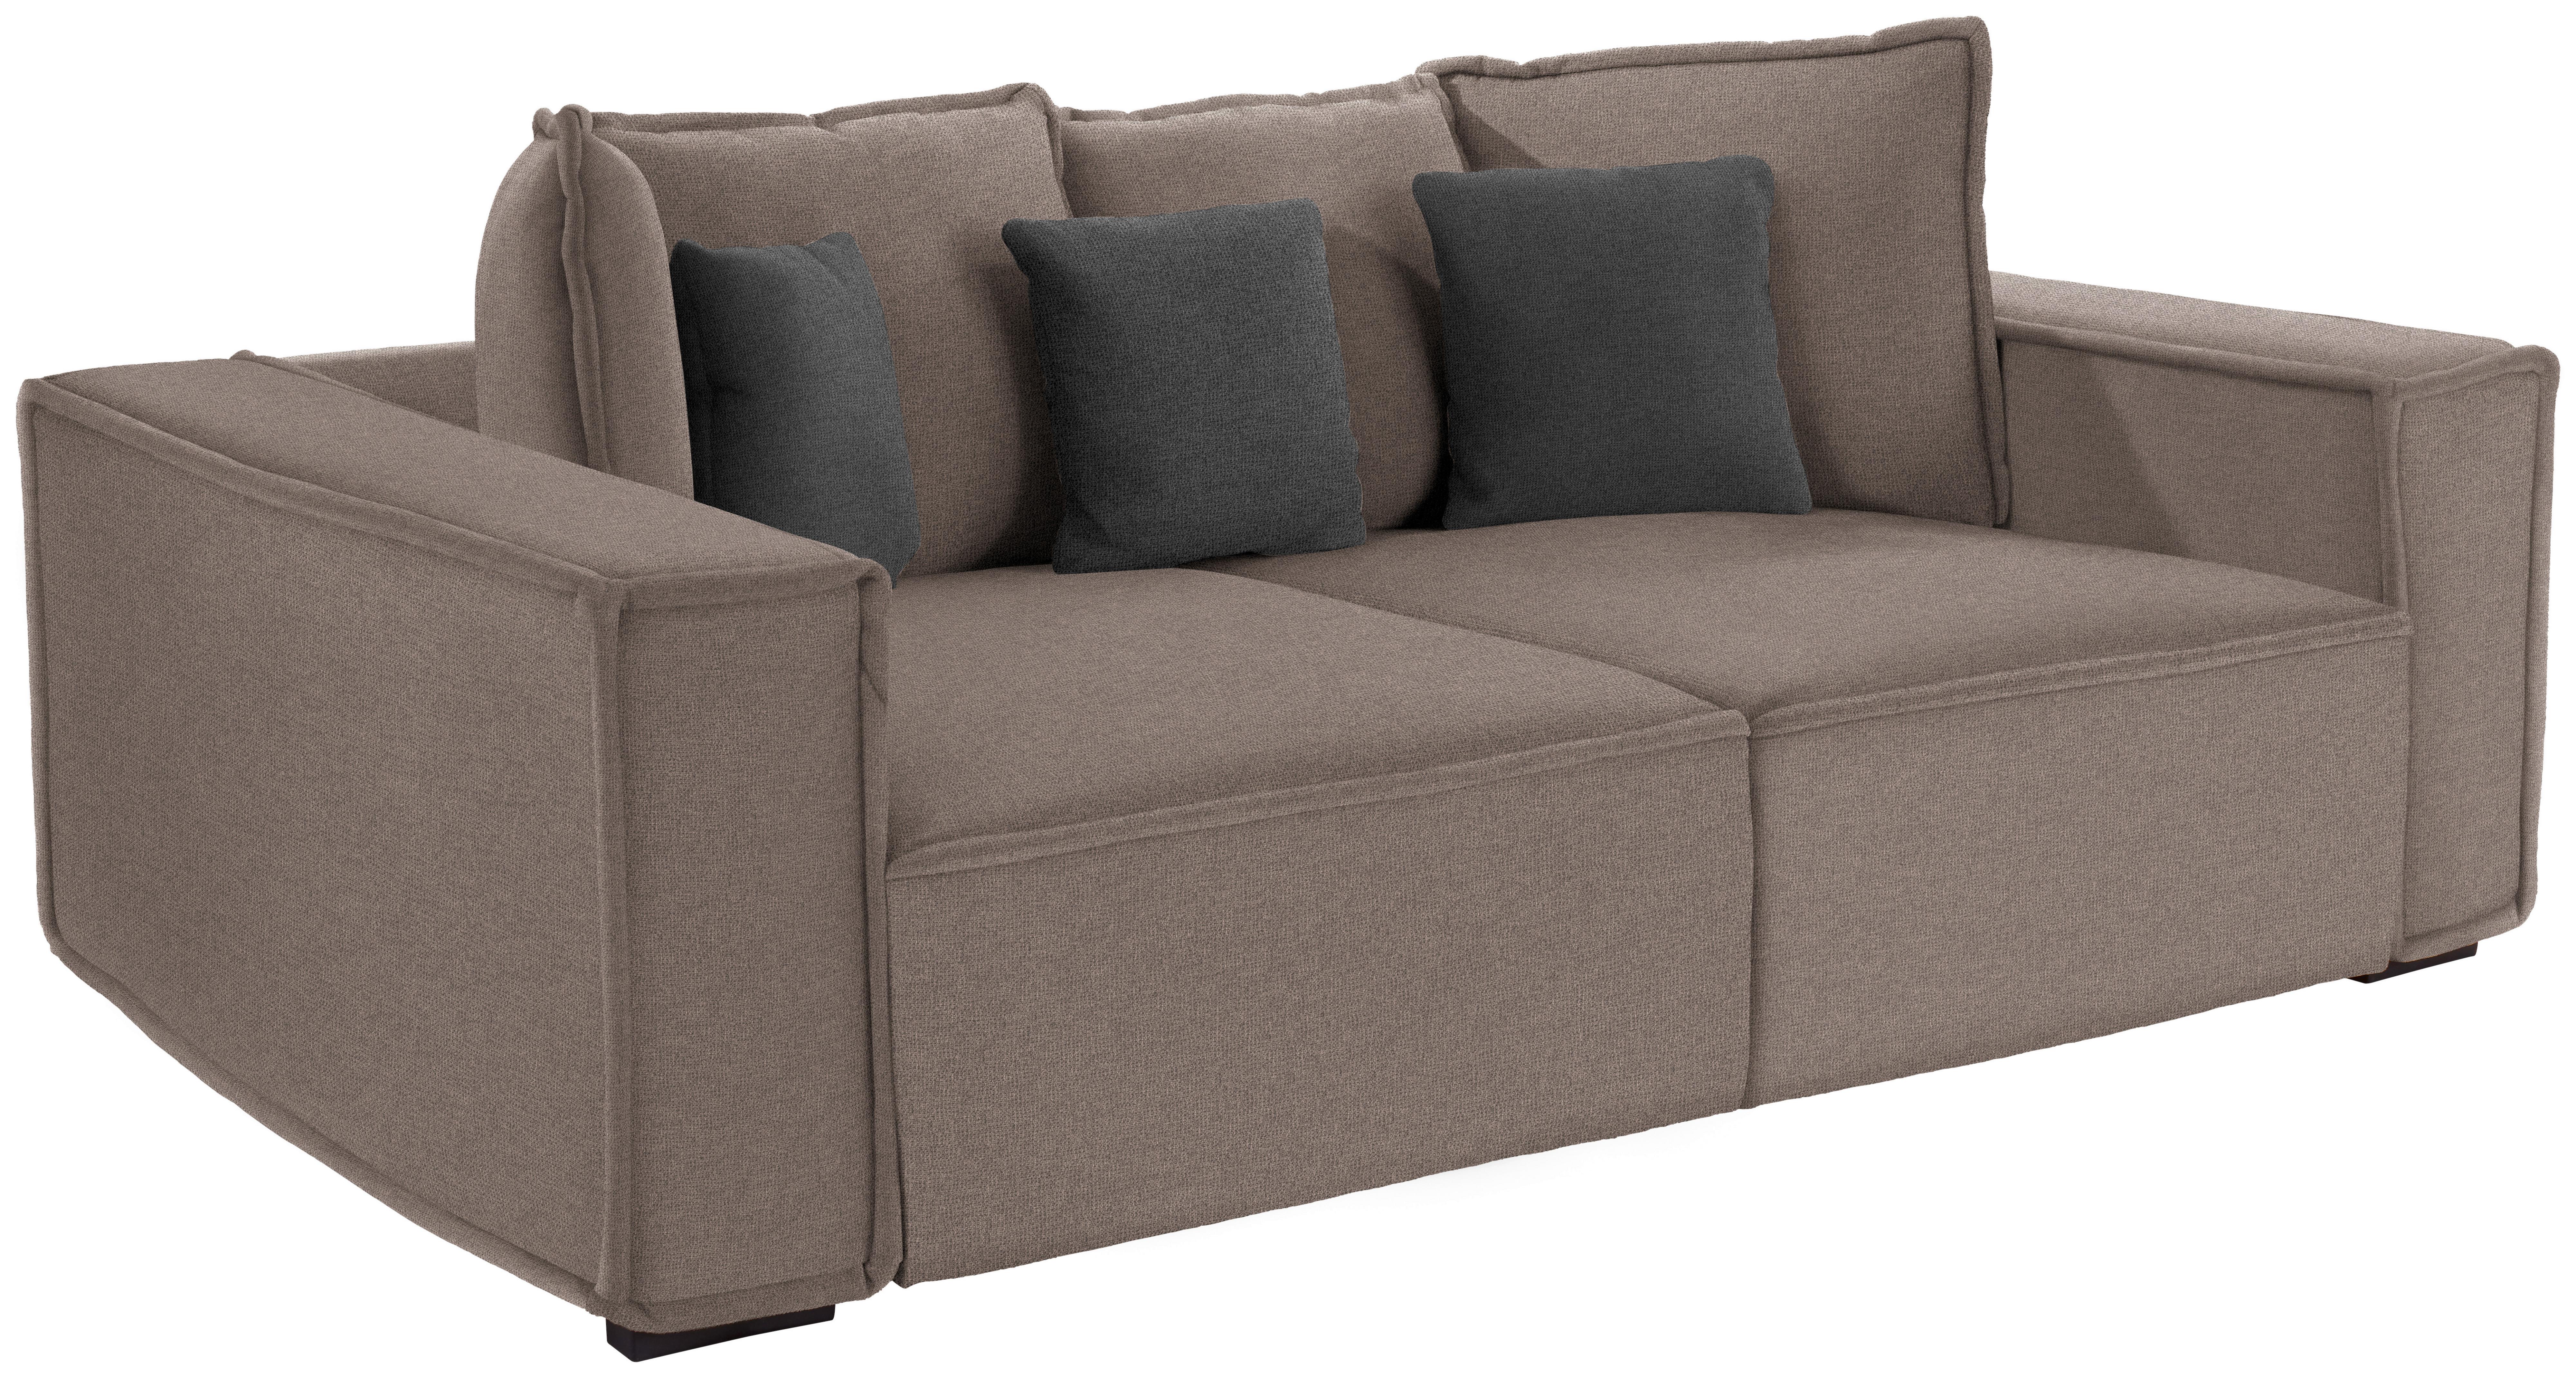 Pohovka Big Sofa Surf - tmavě šedá/šedohnědá, Moderní, dřevo/textil (244/62/117cm) - Luca Bessoni